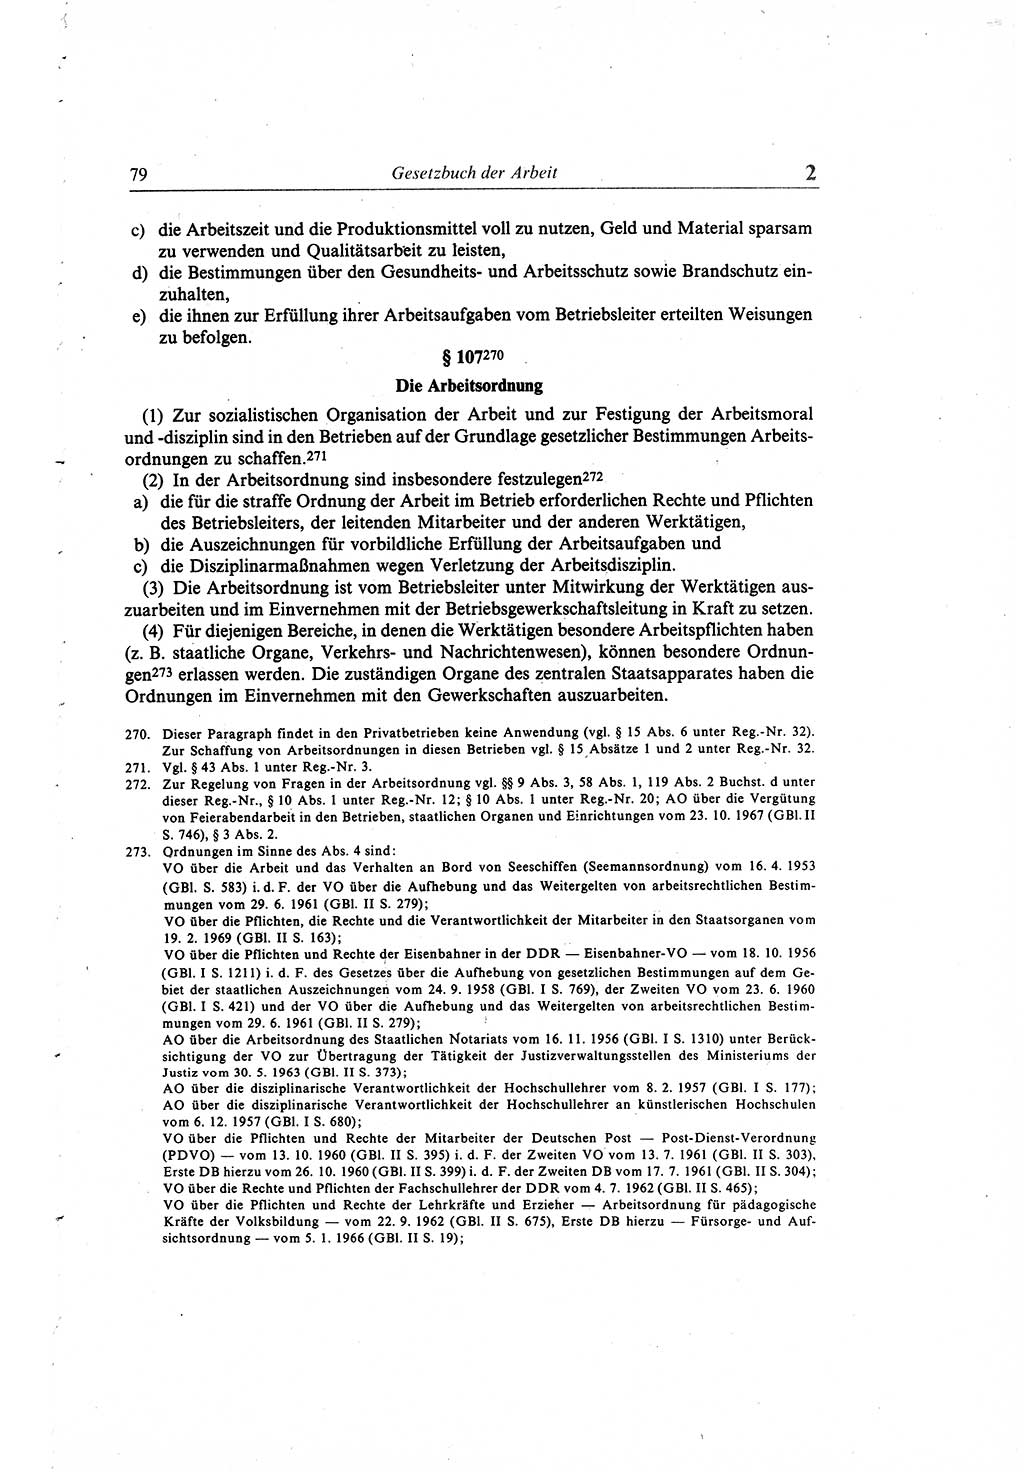 Gesetzbuch der Arbeit (GBA) und andere ausgewählte rechtliche Bestimmungen [Deutsche Demokratische Republik (DDR)] 1968, Seite 79 (GBA DDR 1968, S. 79)